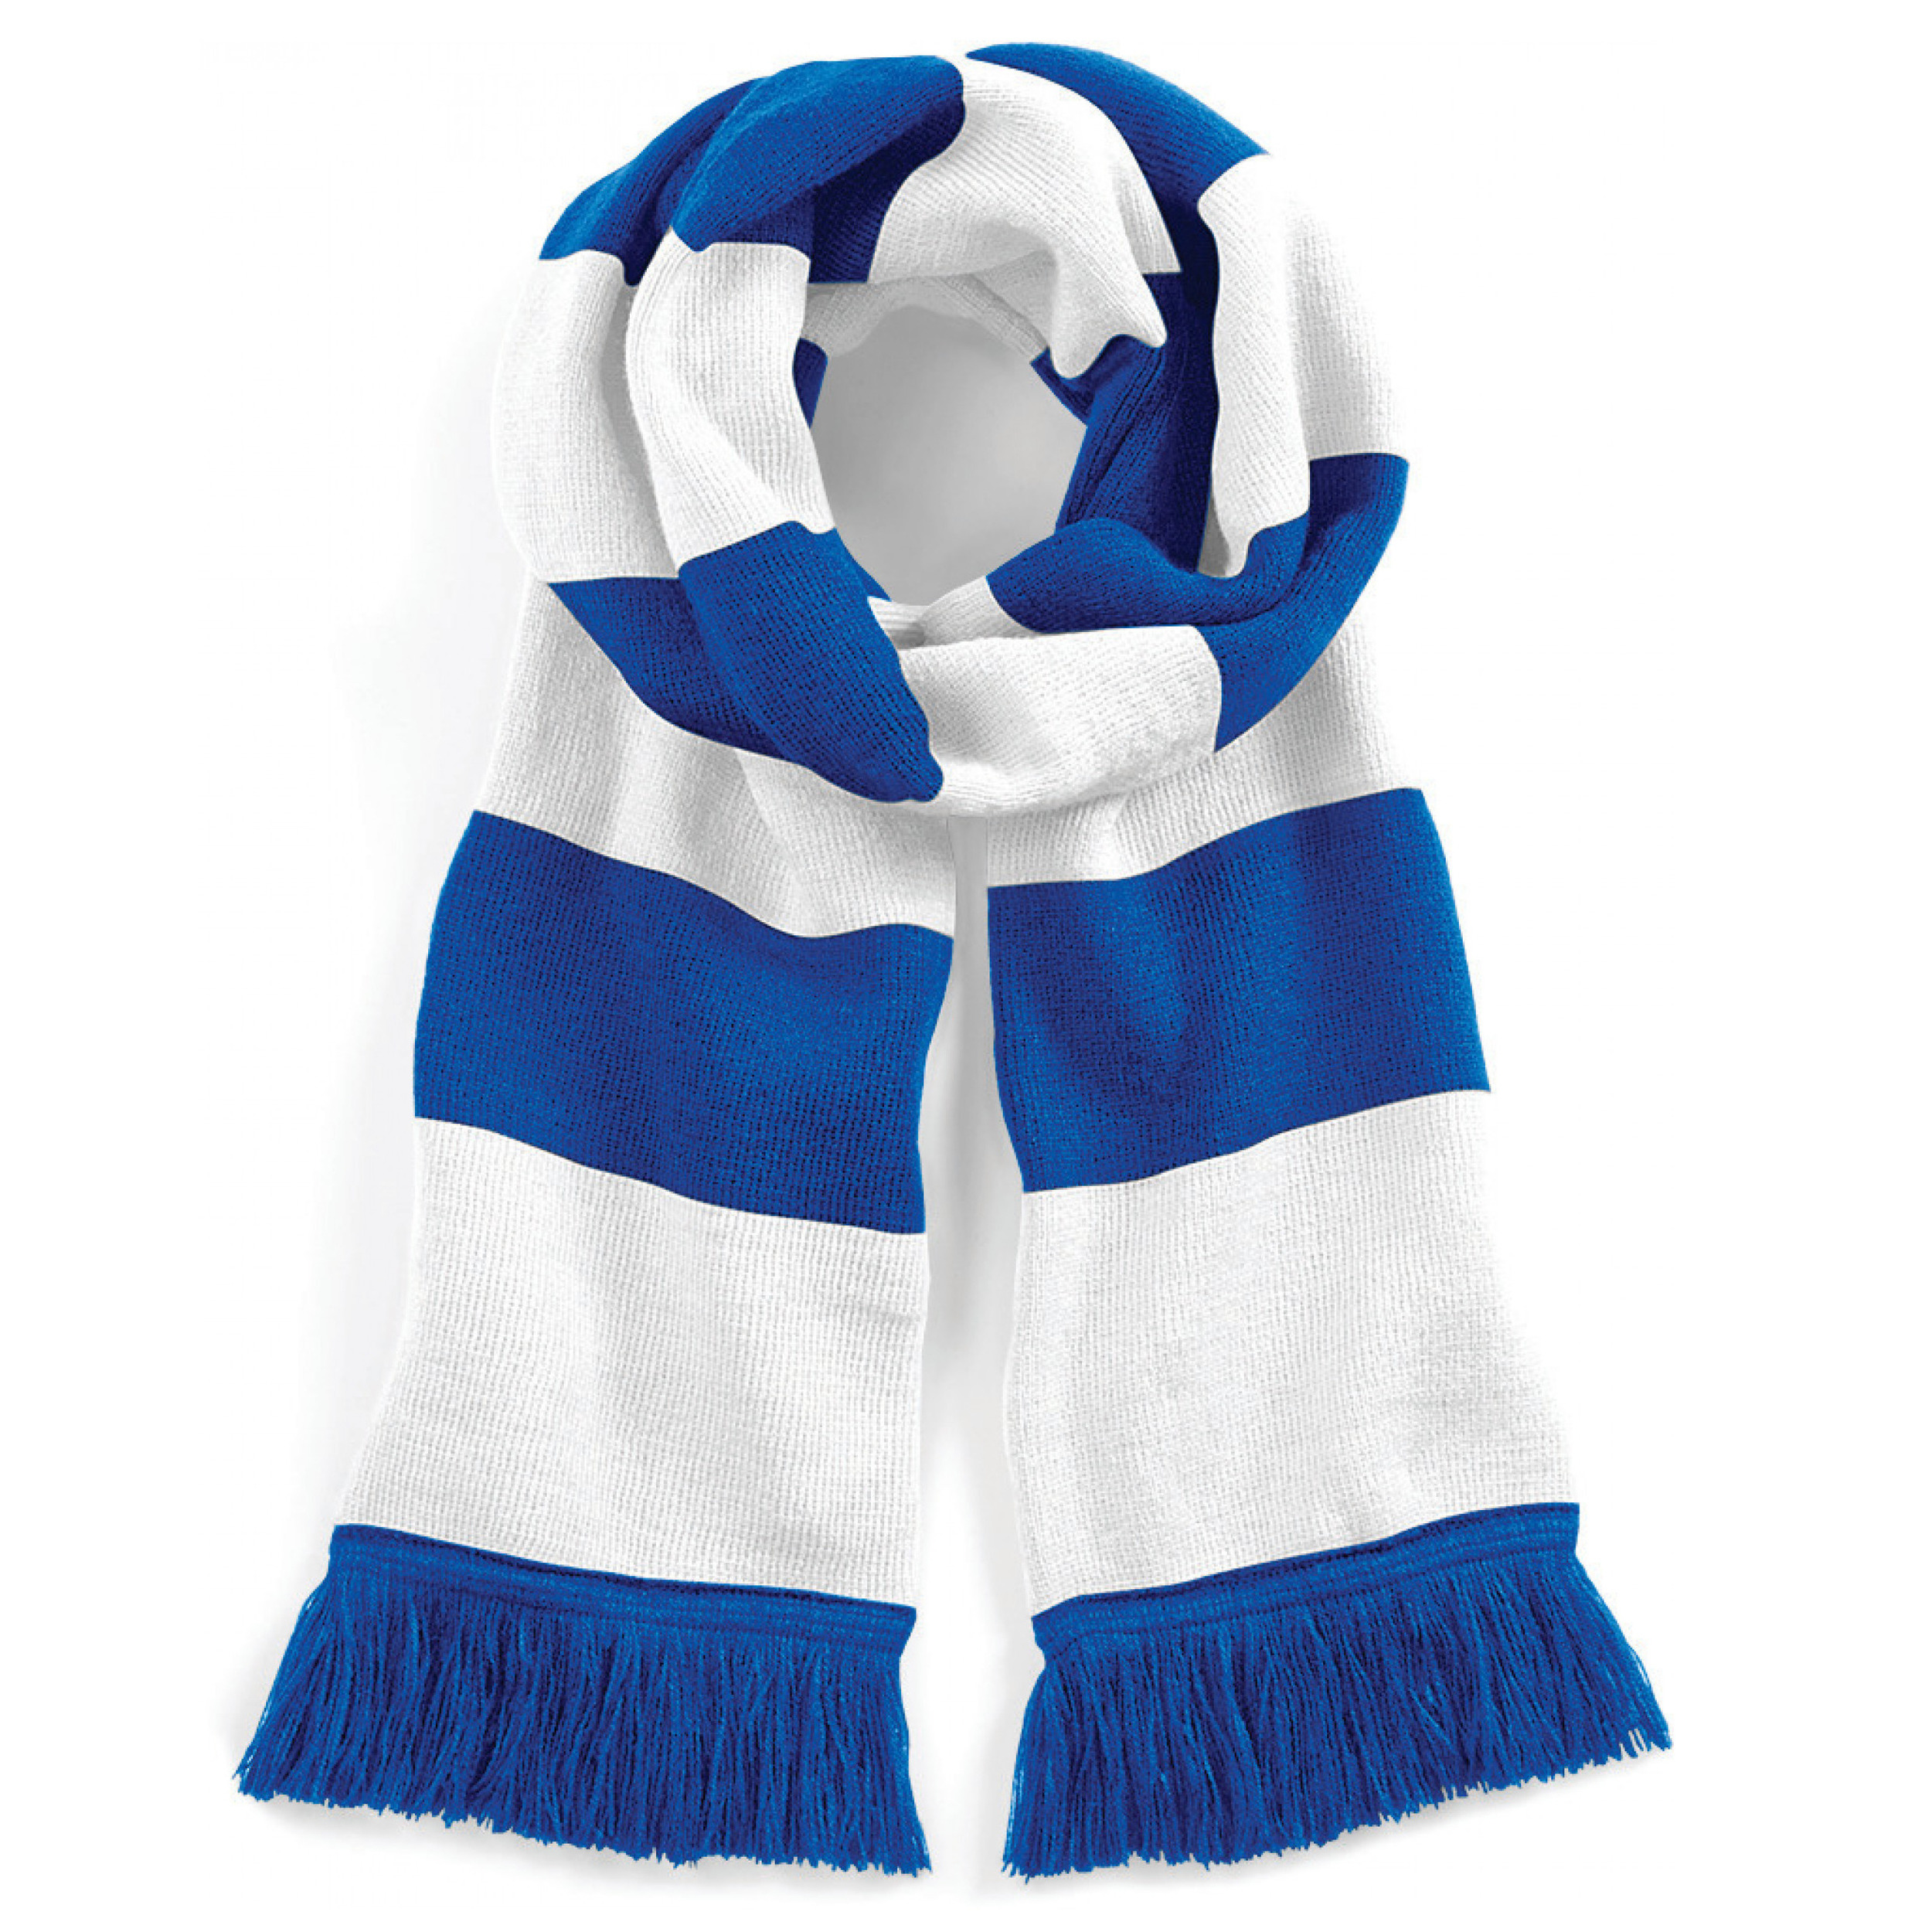 Gestreepte retro sjaal blauw/wit